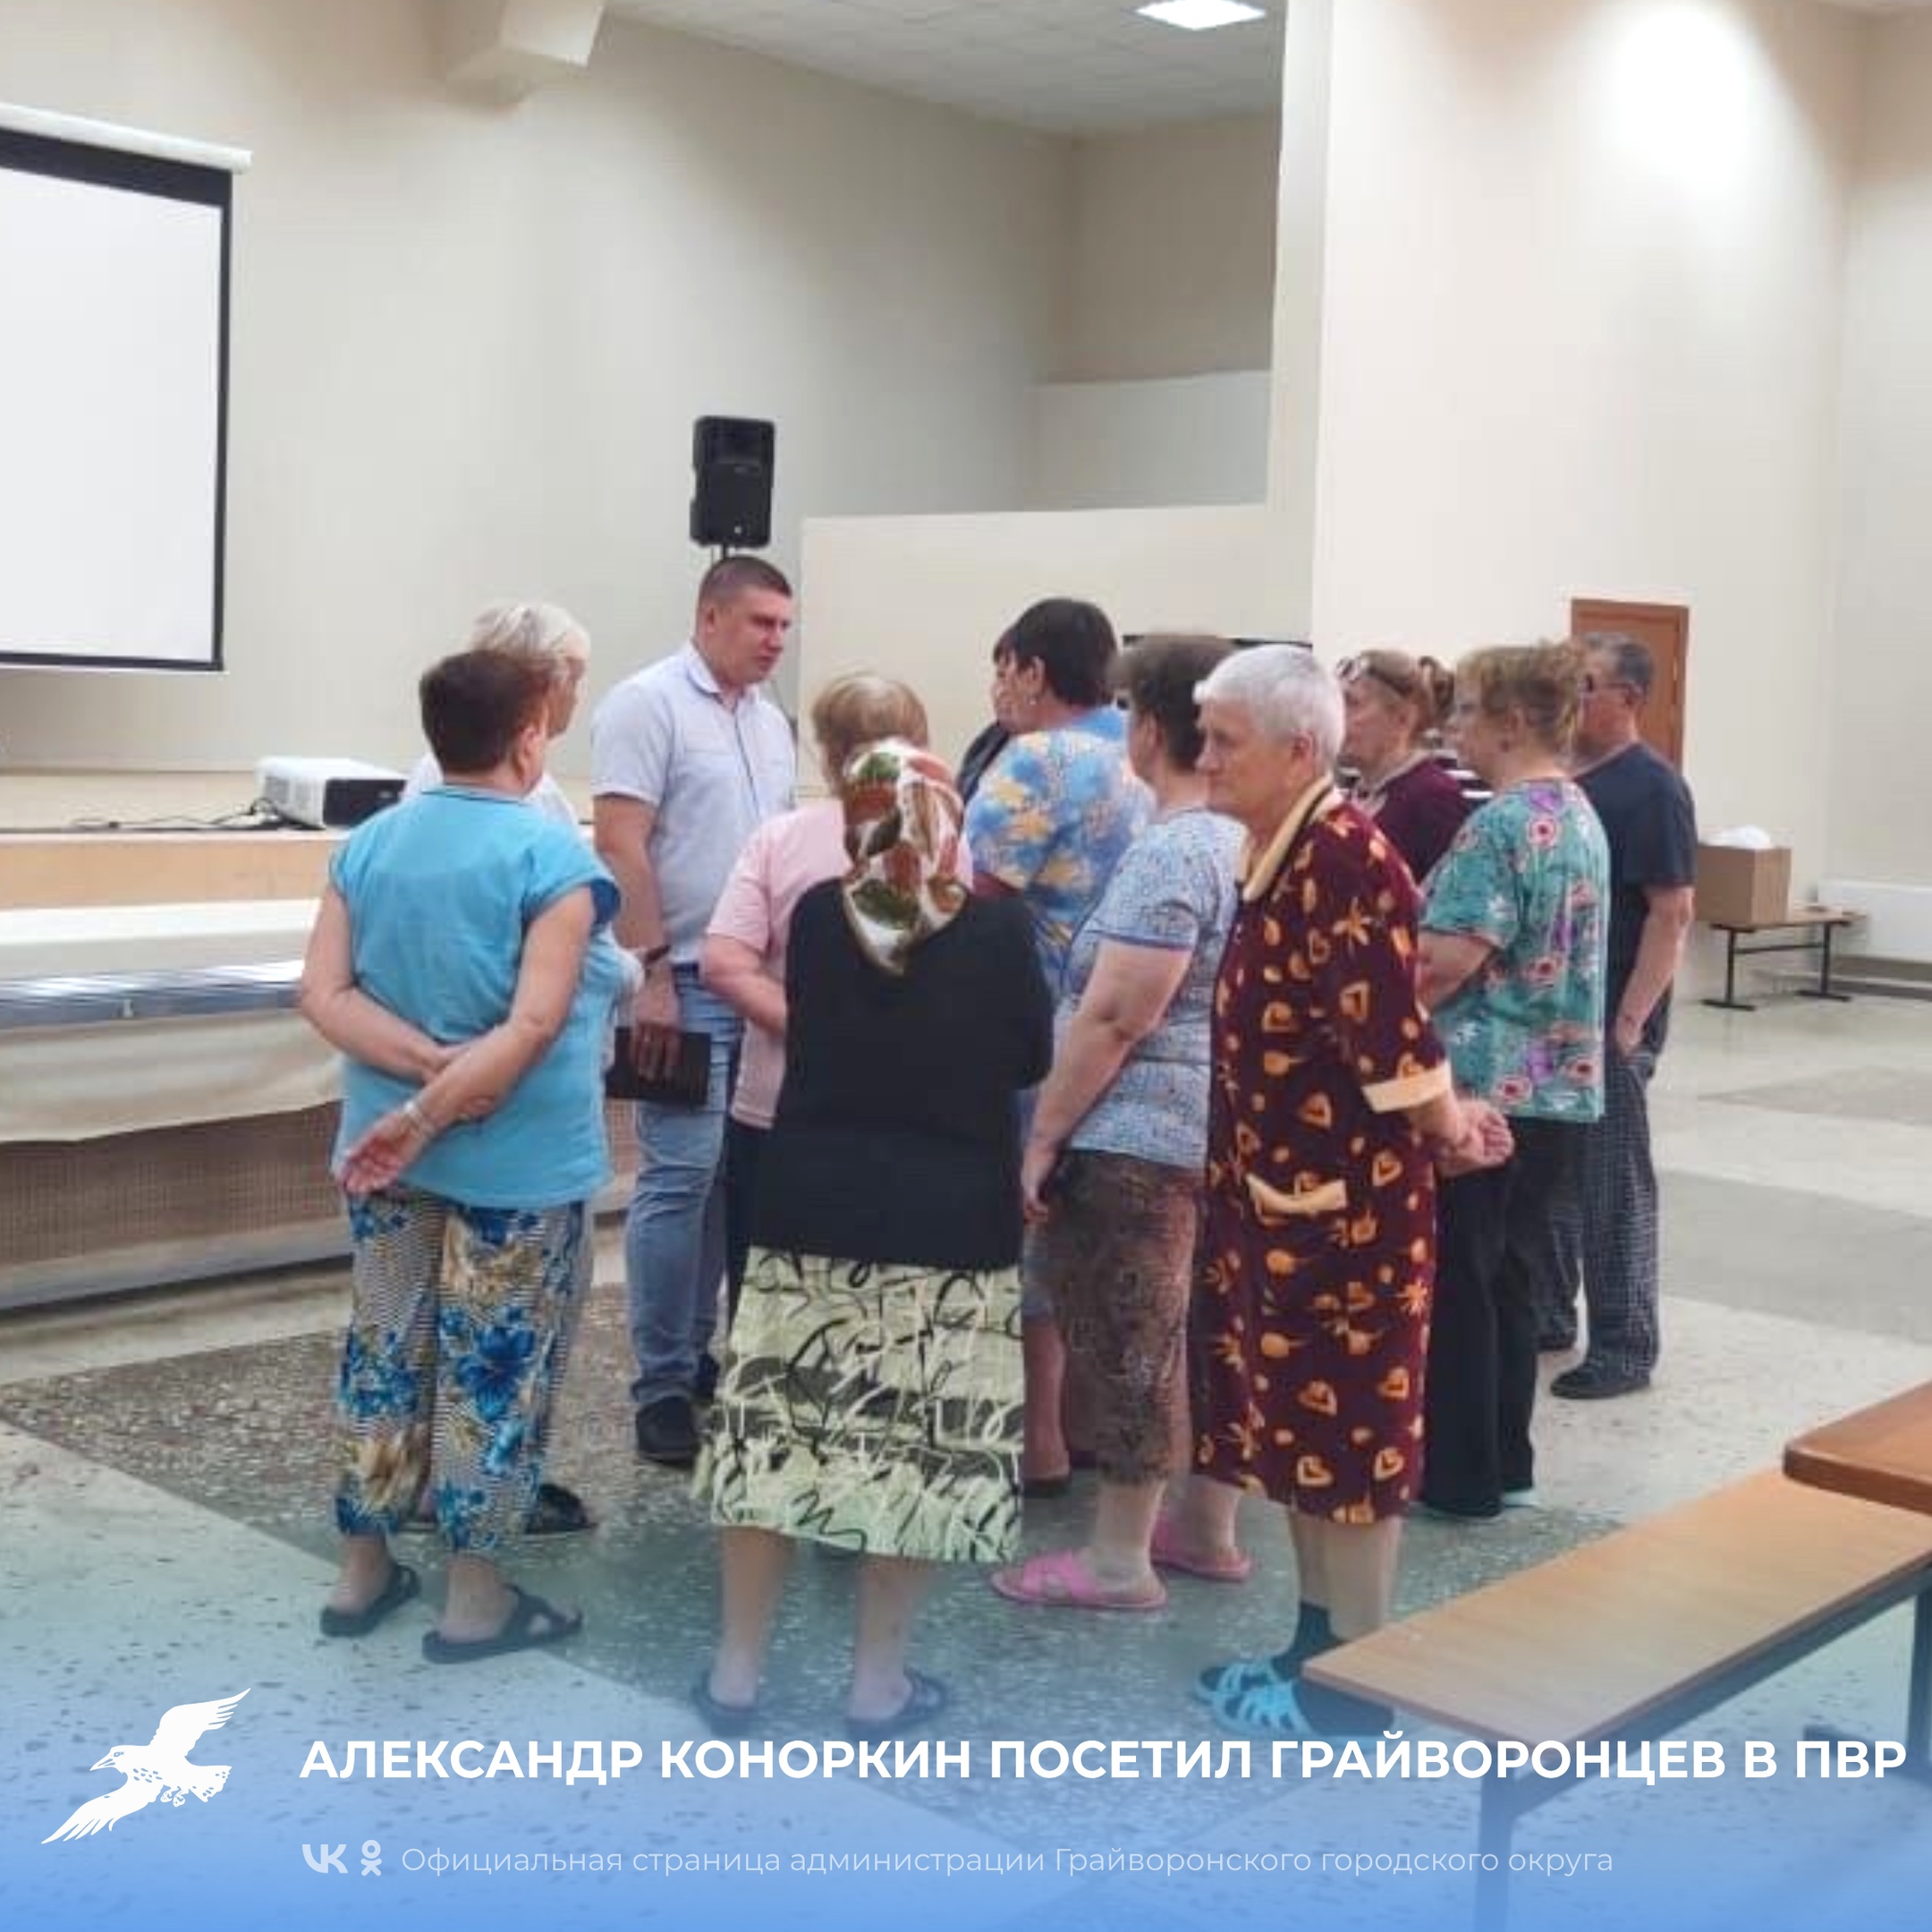 Замглавы администрации муниципалитета Александр Коноркин посетил грайворонцев, находящихся в ПВР.